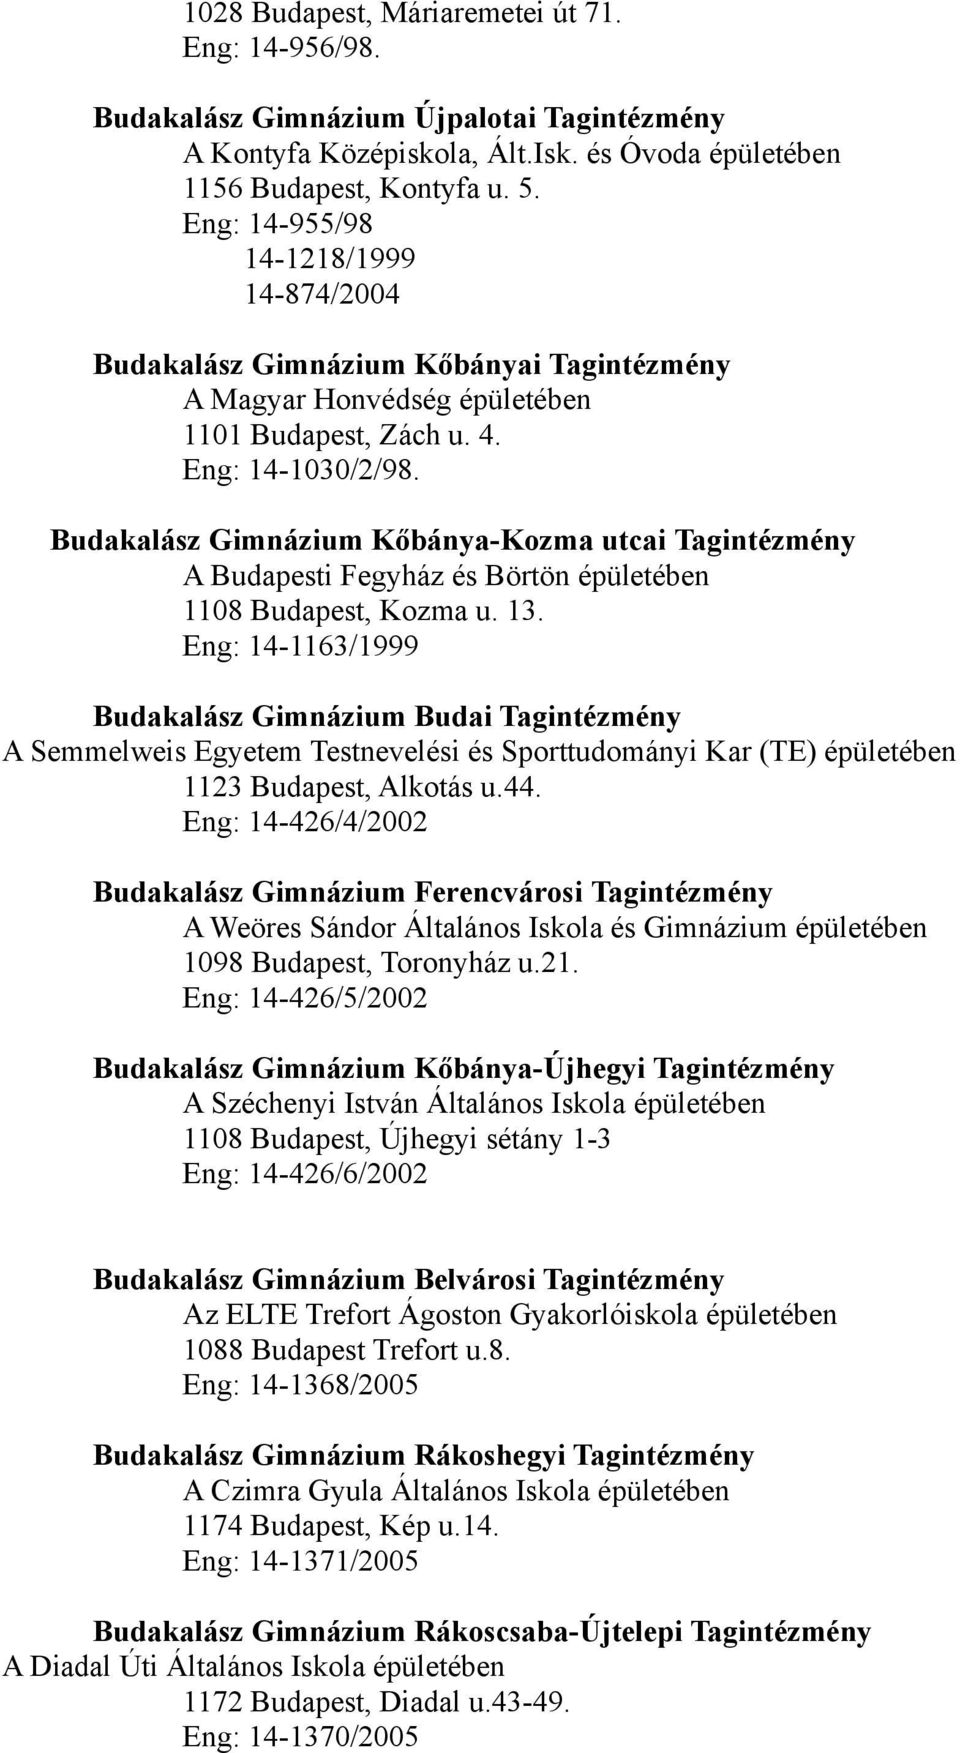 Budakalász Gimnázium Kőbánya-Kozma utcai Tagintézmény A Budapesti Fegyház és Börtön épületében 1108 Budapest, Kozma u. 13.